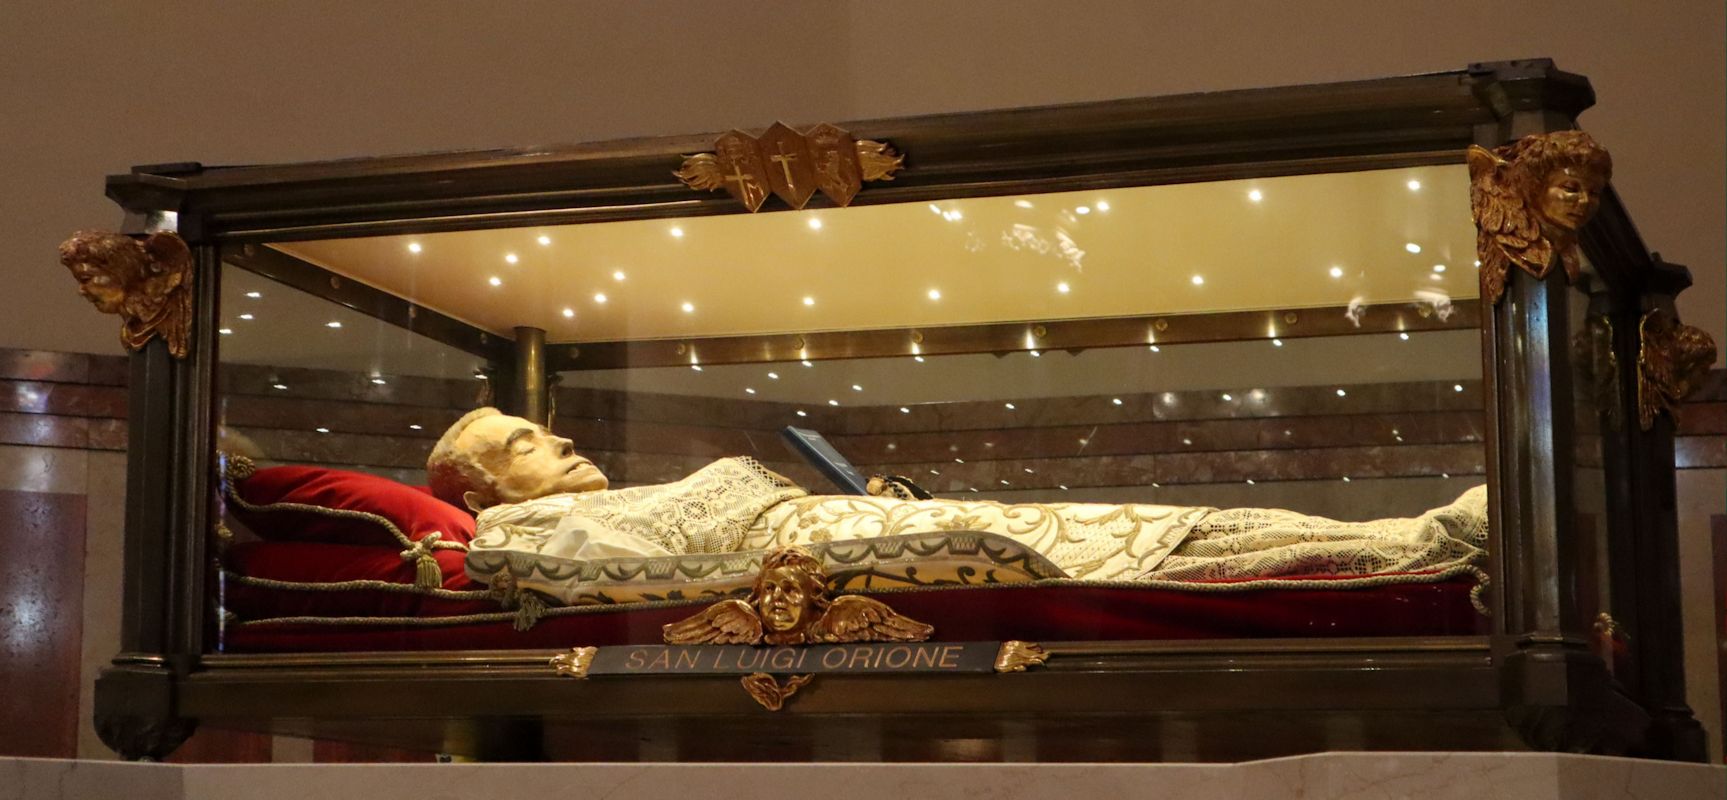 Ludwig Orionos Sarg im Sanktuarium Madonna della Guardia in Tortona